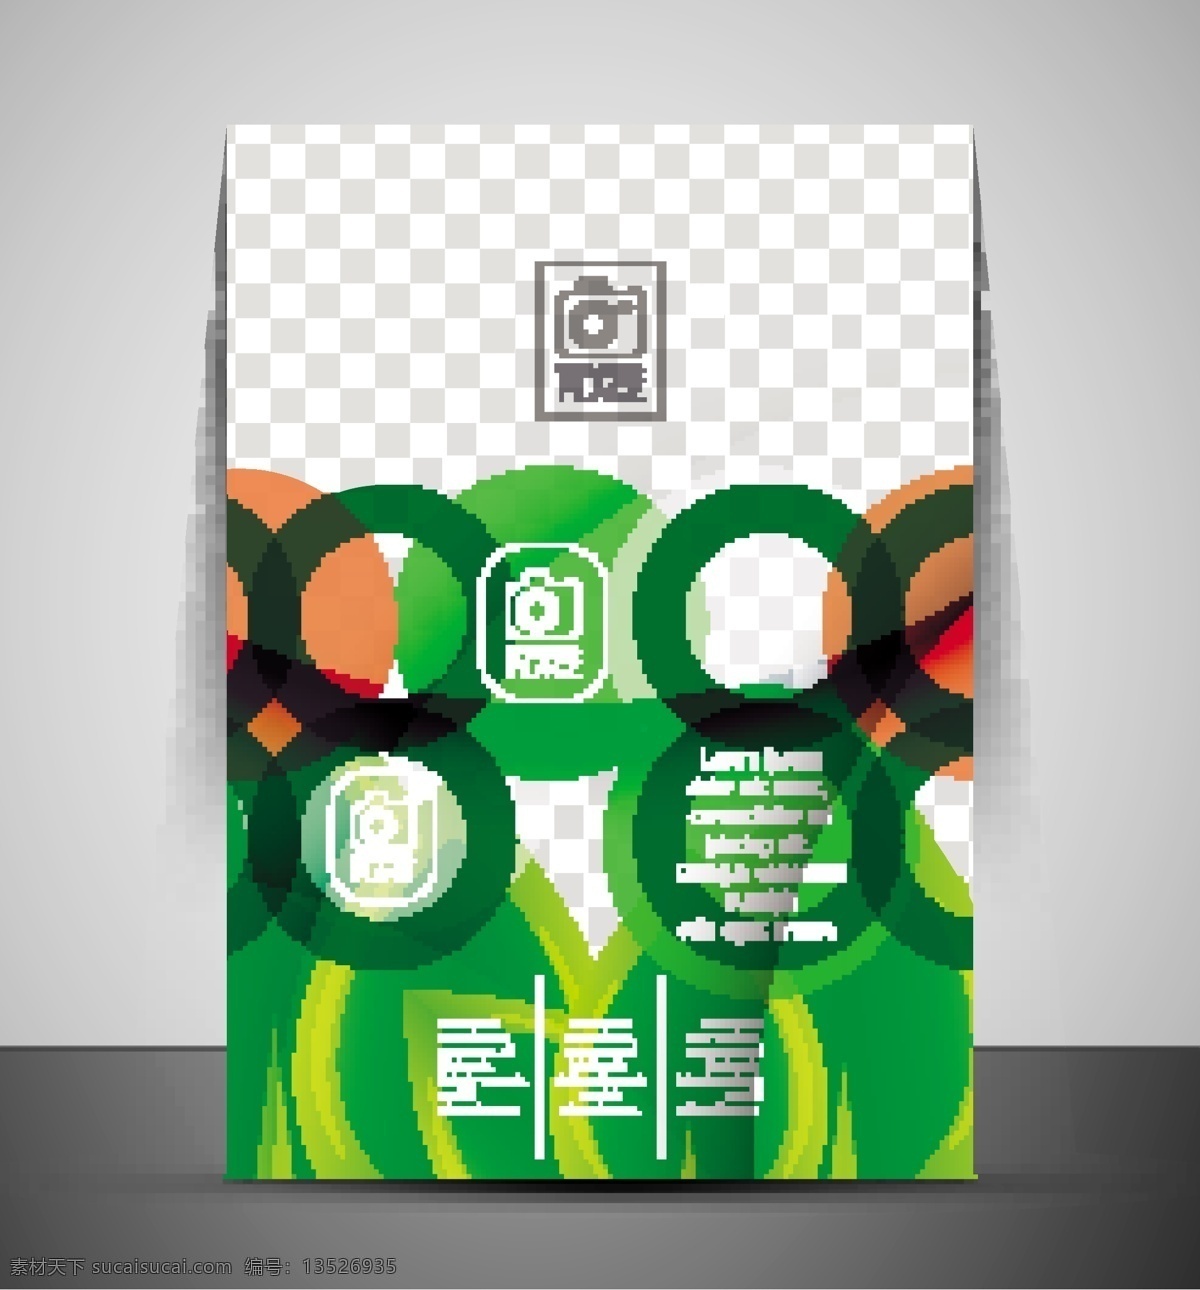 绿色 树形 海报 封面设计 绿色圆圈 抽象树形 系 清新 风格 创意海报 新颖海报 海报模板 海报样板 海报封面设计 海报广告设计 背景 图案 海报宣传设计 传单模板 其他模板 矢量素材 灰色